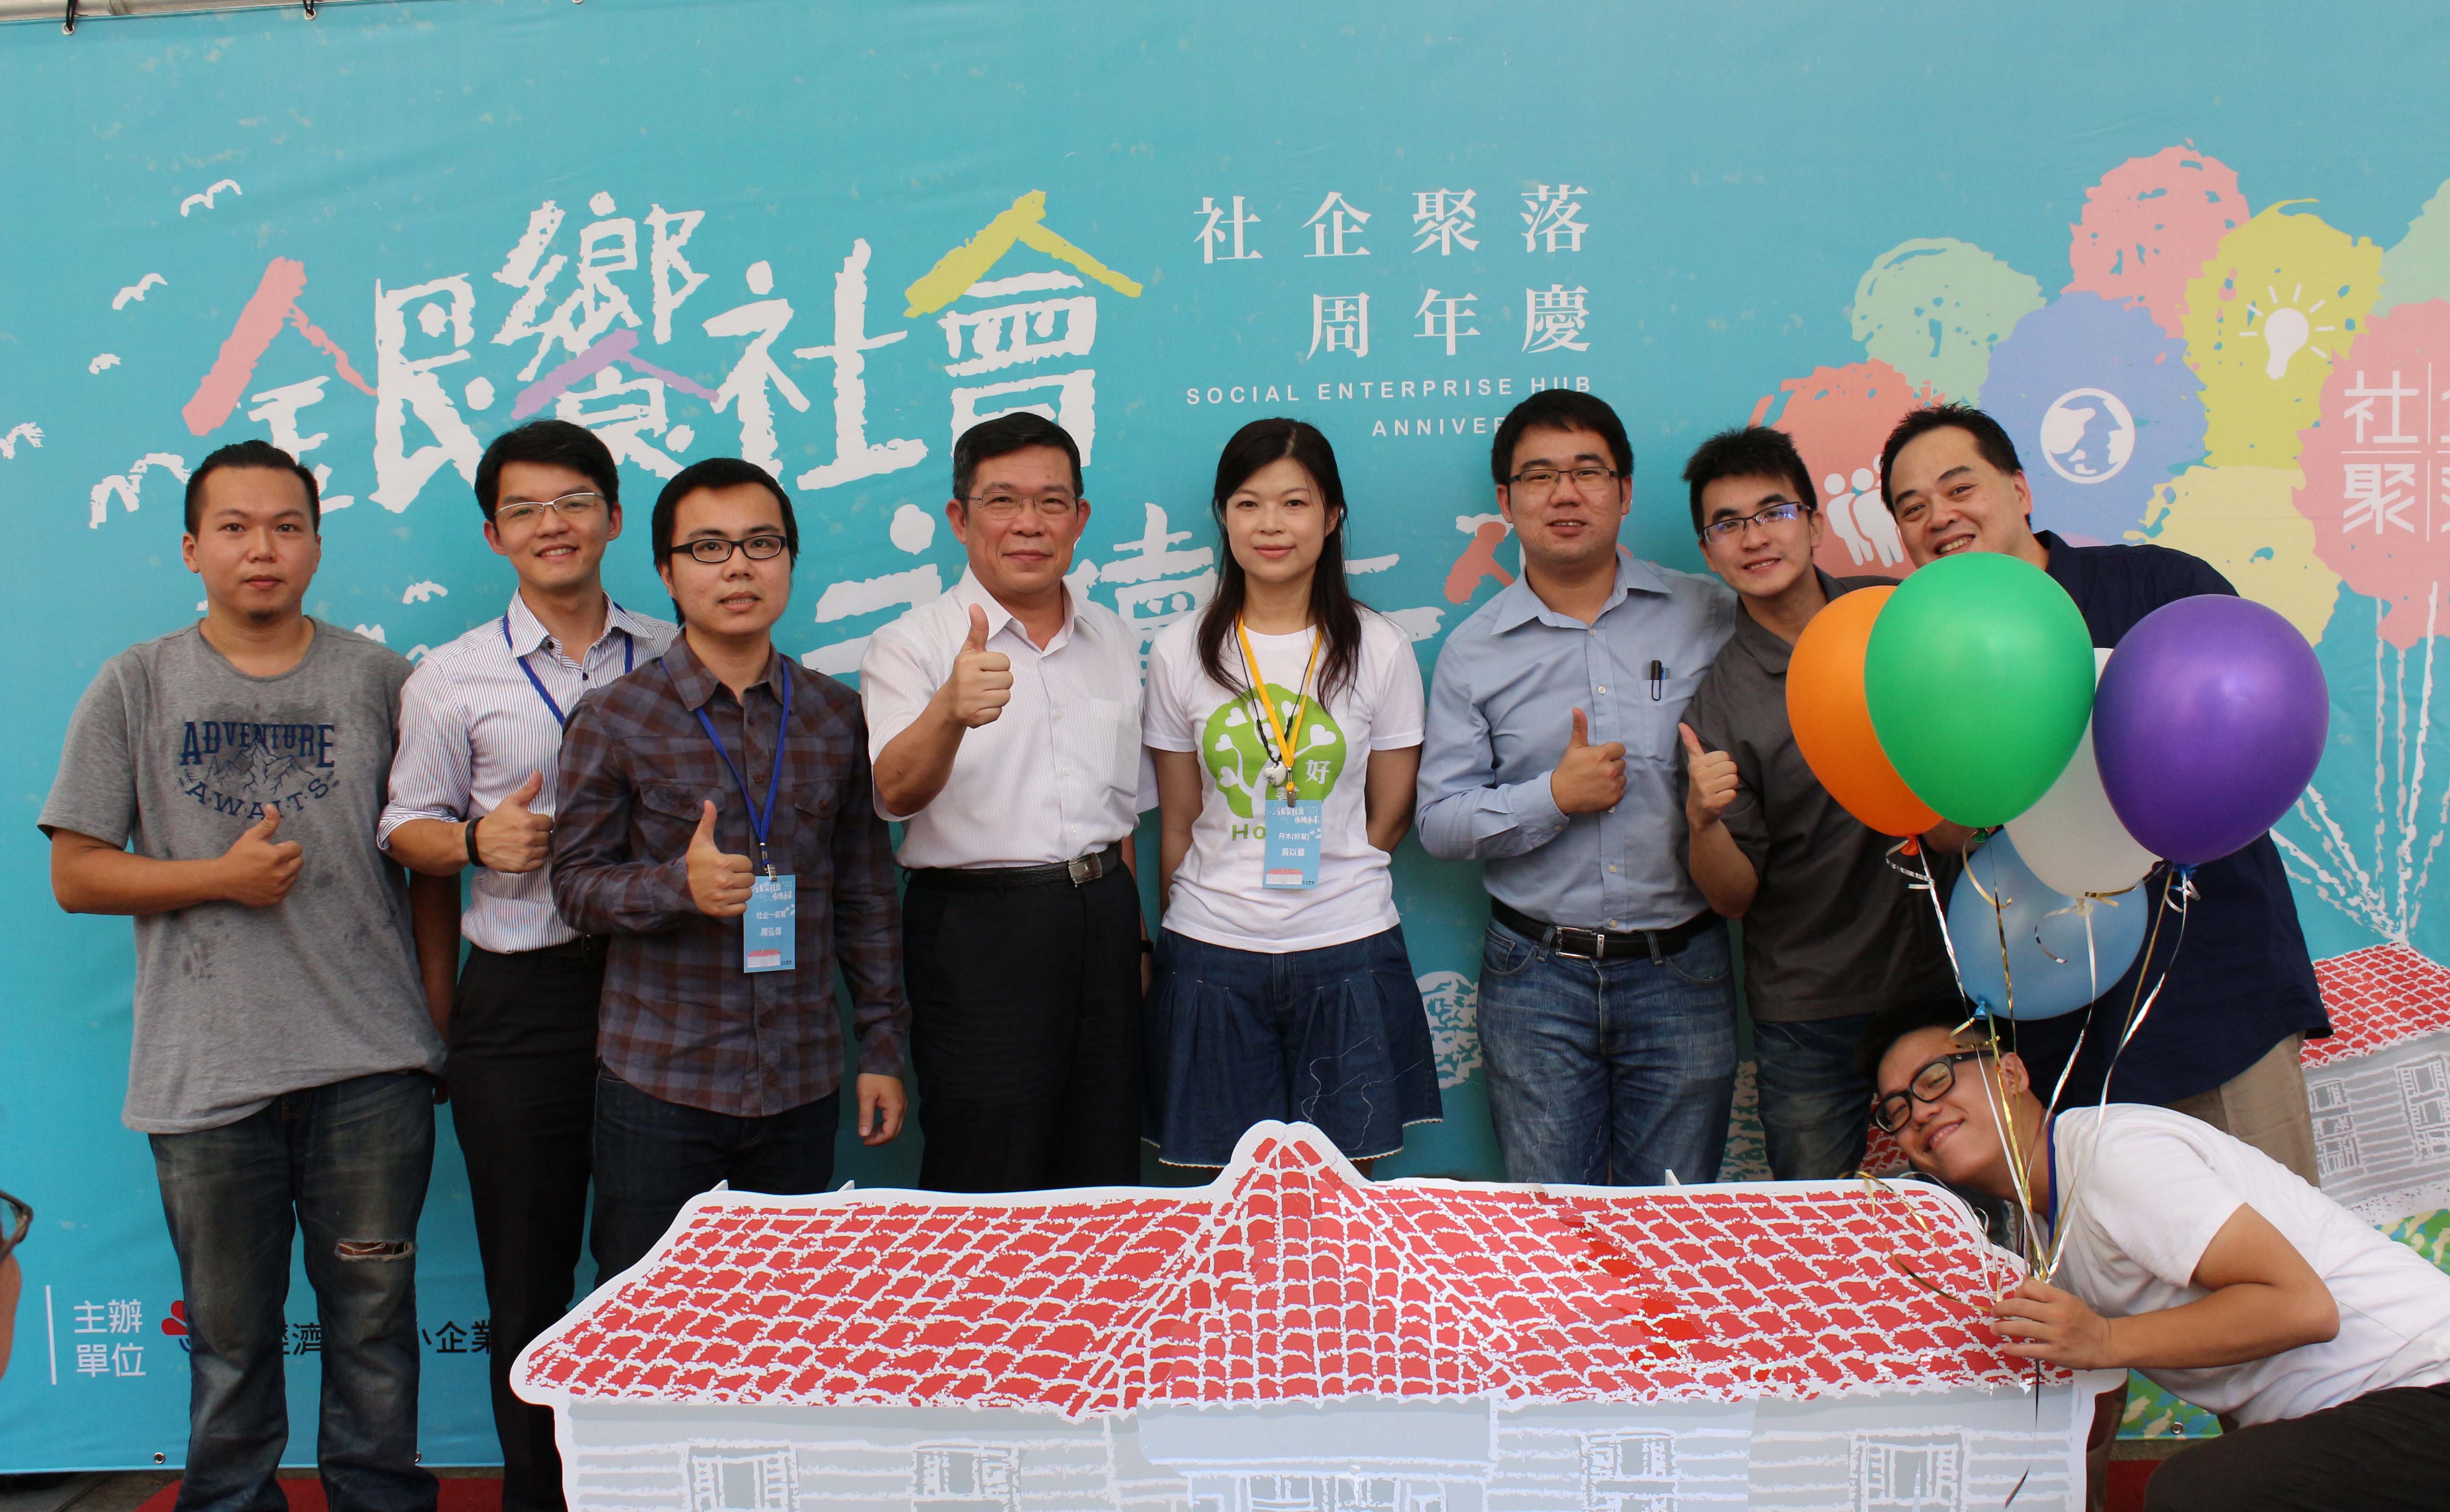 經濟部中小企業處林志成主祕傳承象徵夢想與活力的氣球給進駐社企團隊